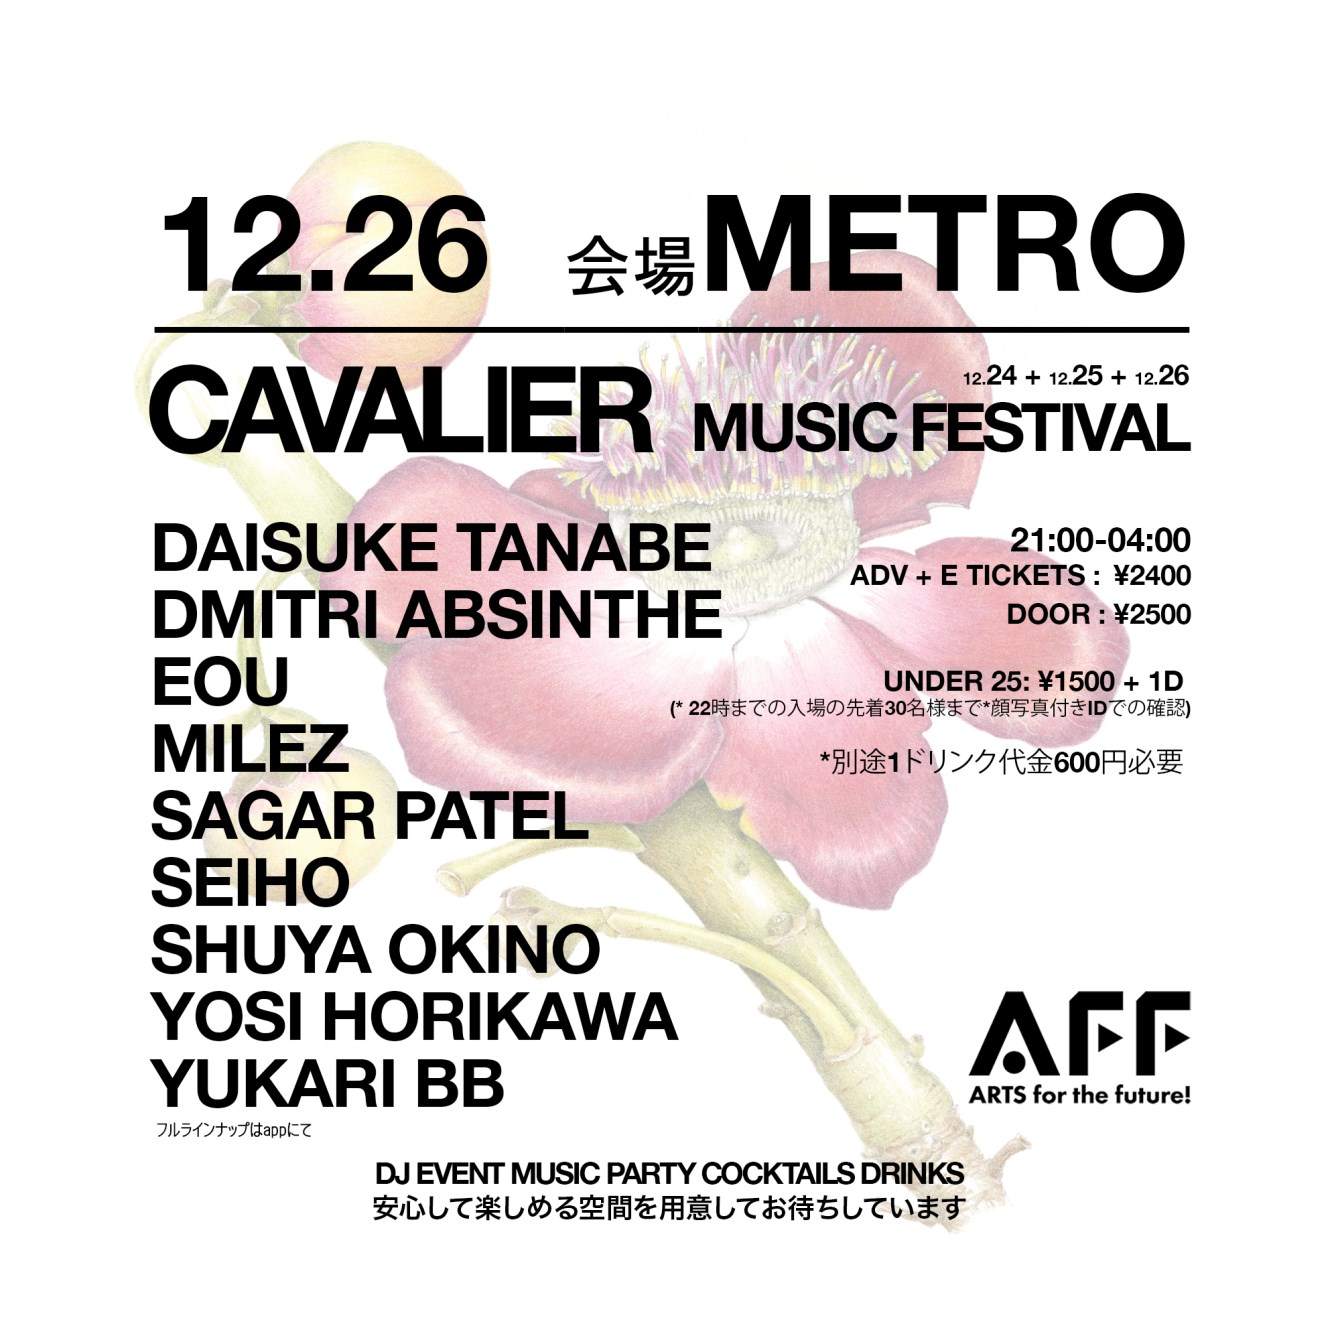 12月26日 会場 Club Metro - Cavalier Music Festival - フライヤー表